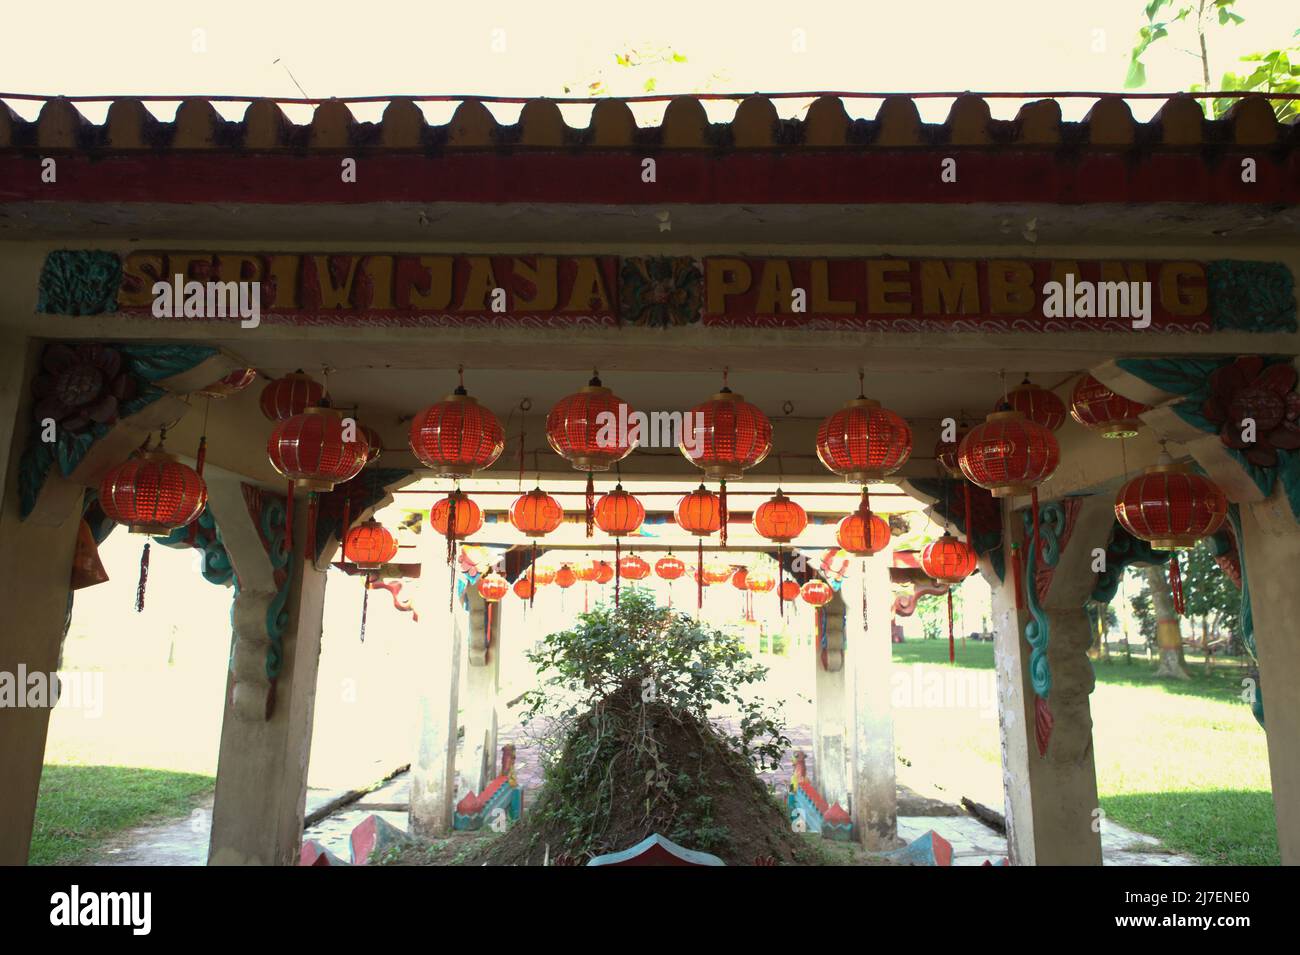 Une structure de toit avec un signe écrit qui lit 'Sériwijaya (Srivijaya) Palembang' dans une ancienne tombe du temple de Pulo Kemaro (île Kemaro), un lieu de culte pour le bouddhisme, le taoïsme et le confucianisme à Palembang, Sumatra Sud, Indonésie. Selon un folklore local, la tombe appartenait à une princesse de Srivijaya. Banque D'Images